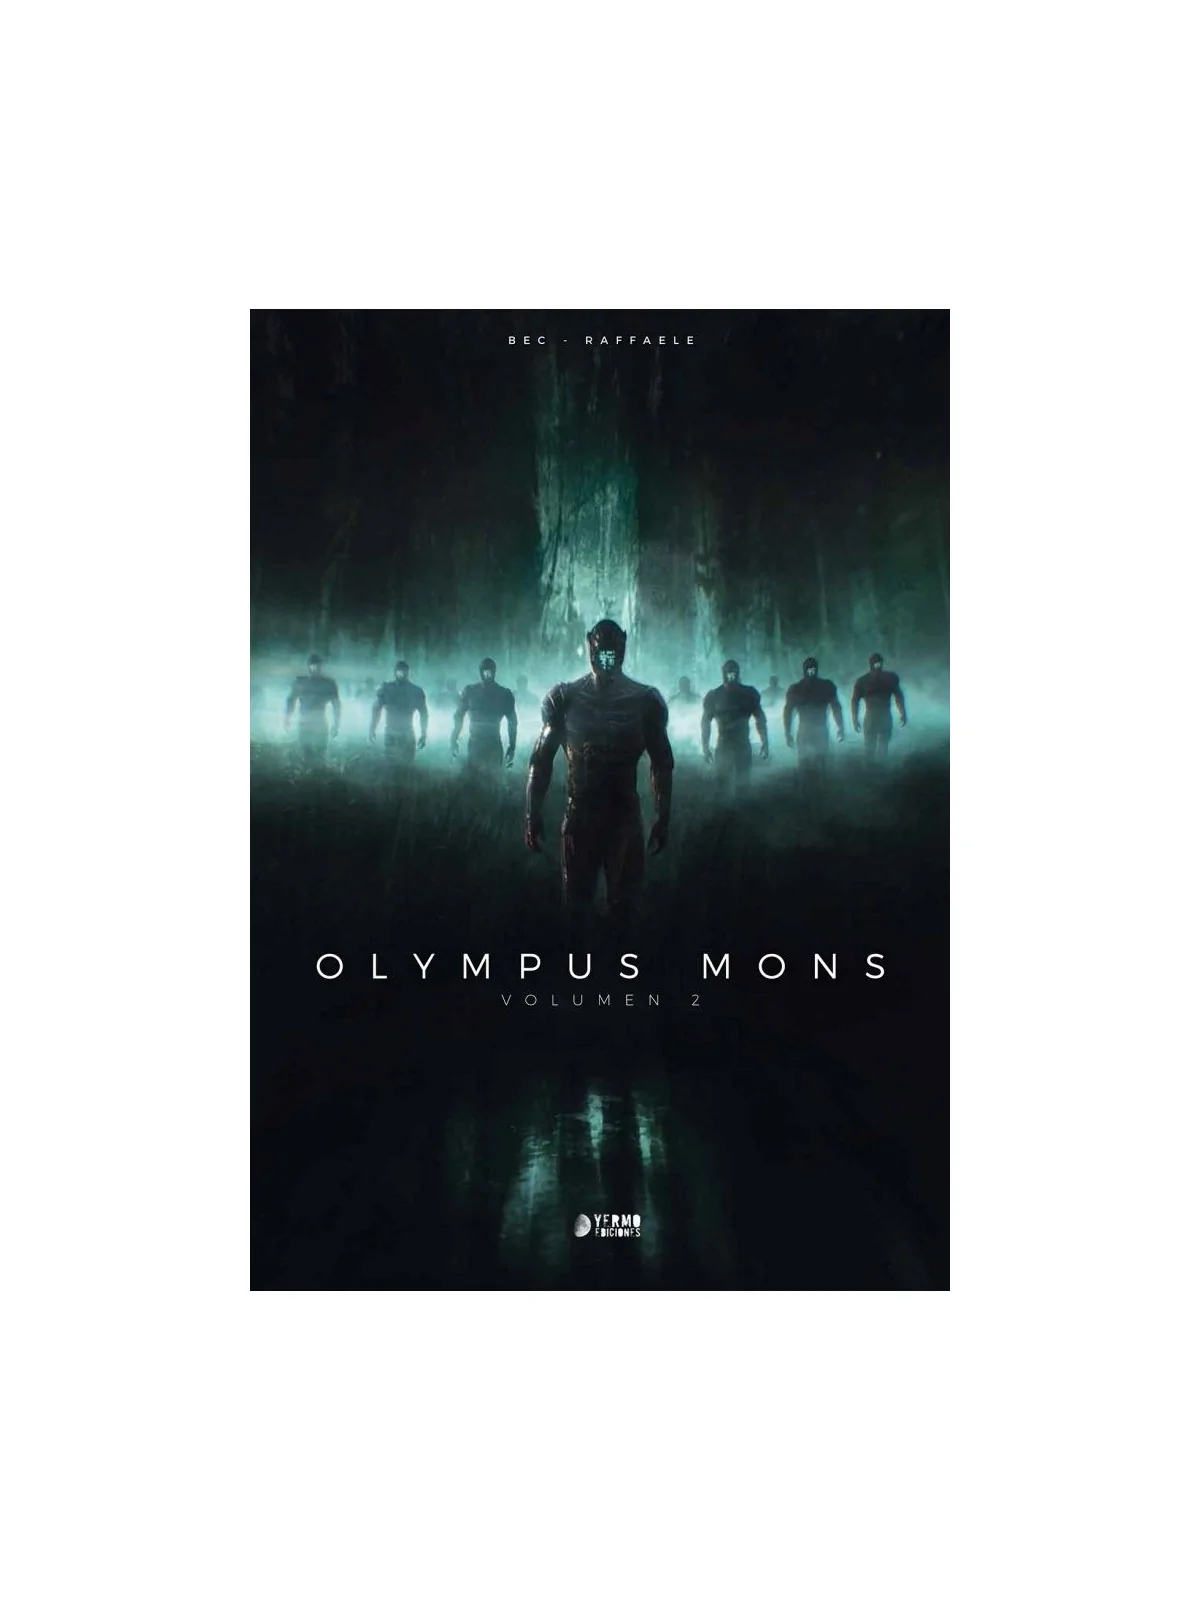 Comprar Olympus Mons 02 barato al mejor precio 23,75 € de Yermo Edicio